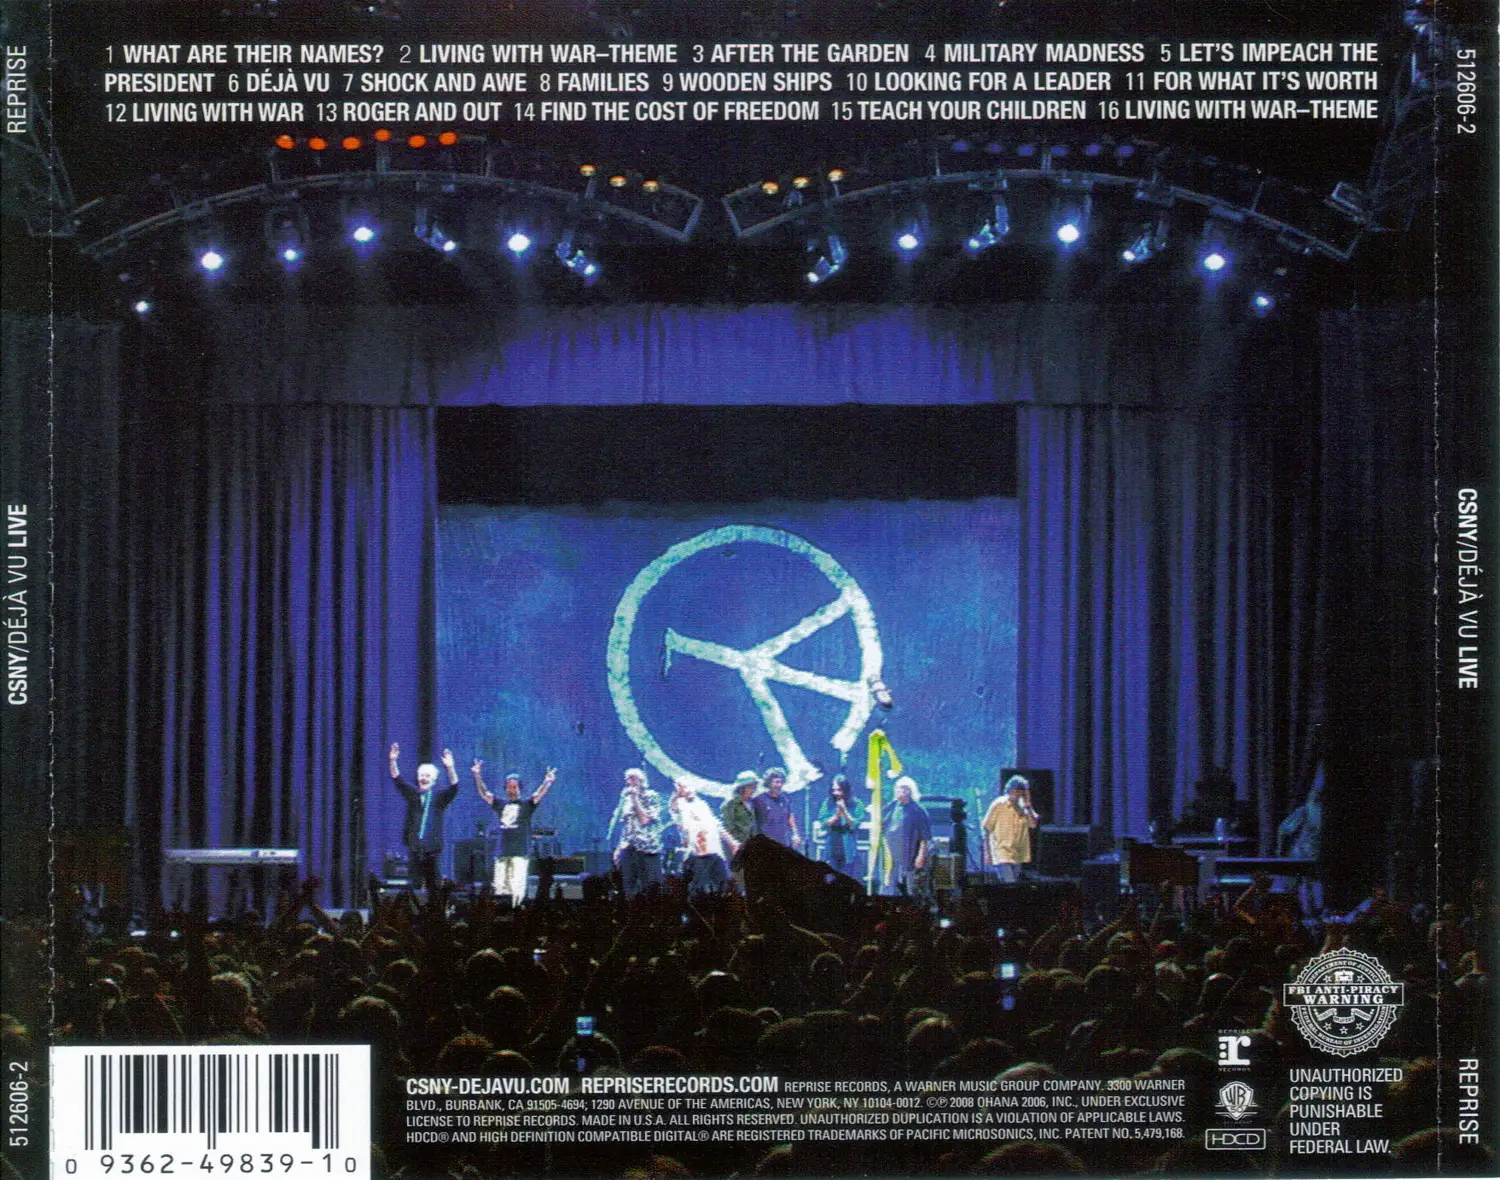 Crosby, Stills, Nash & Young - Deja Vu Live, 2008 (Reprise Records ...